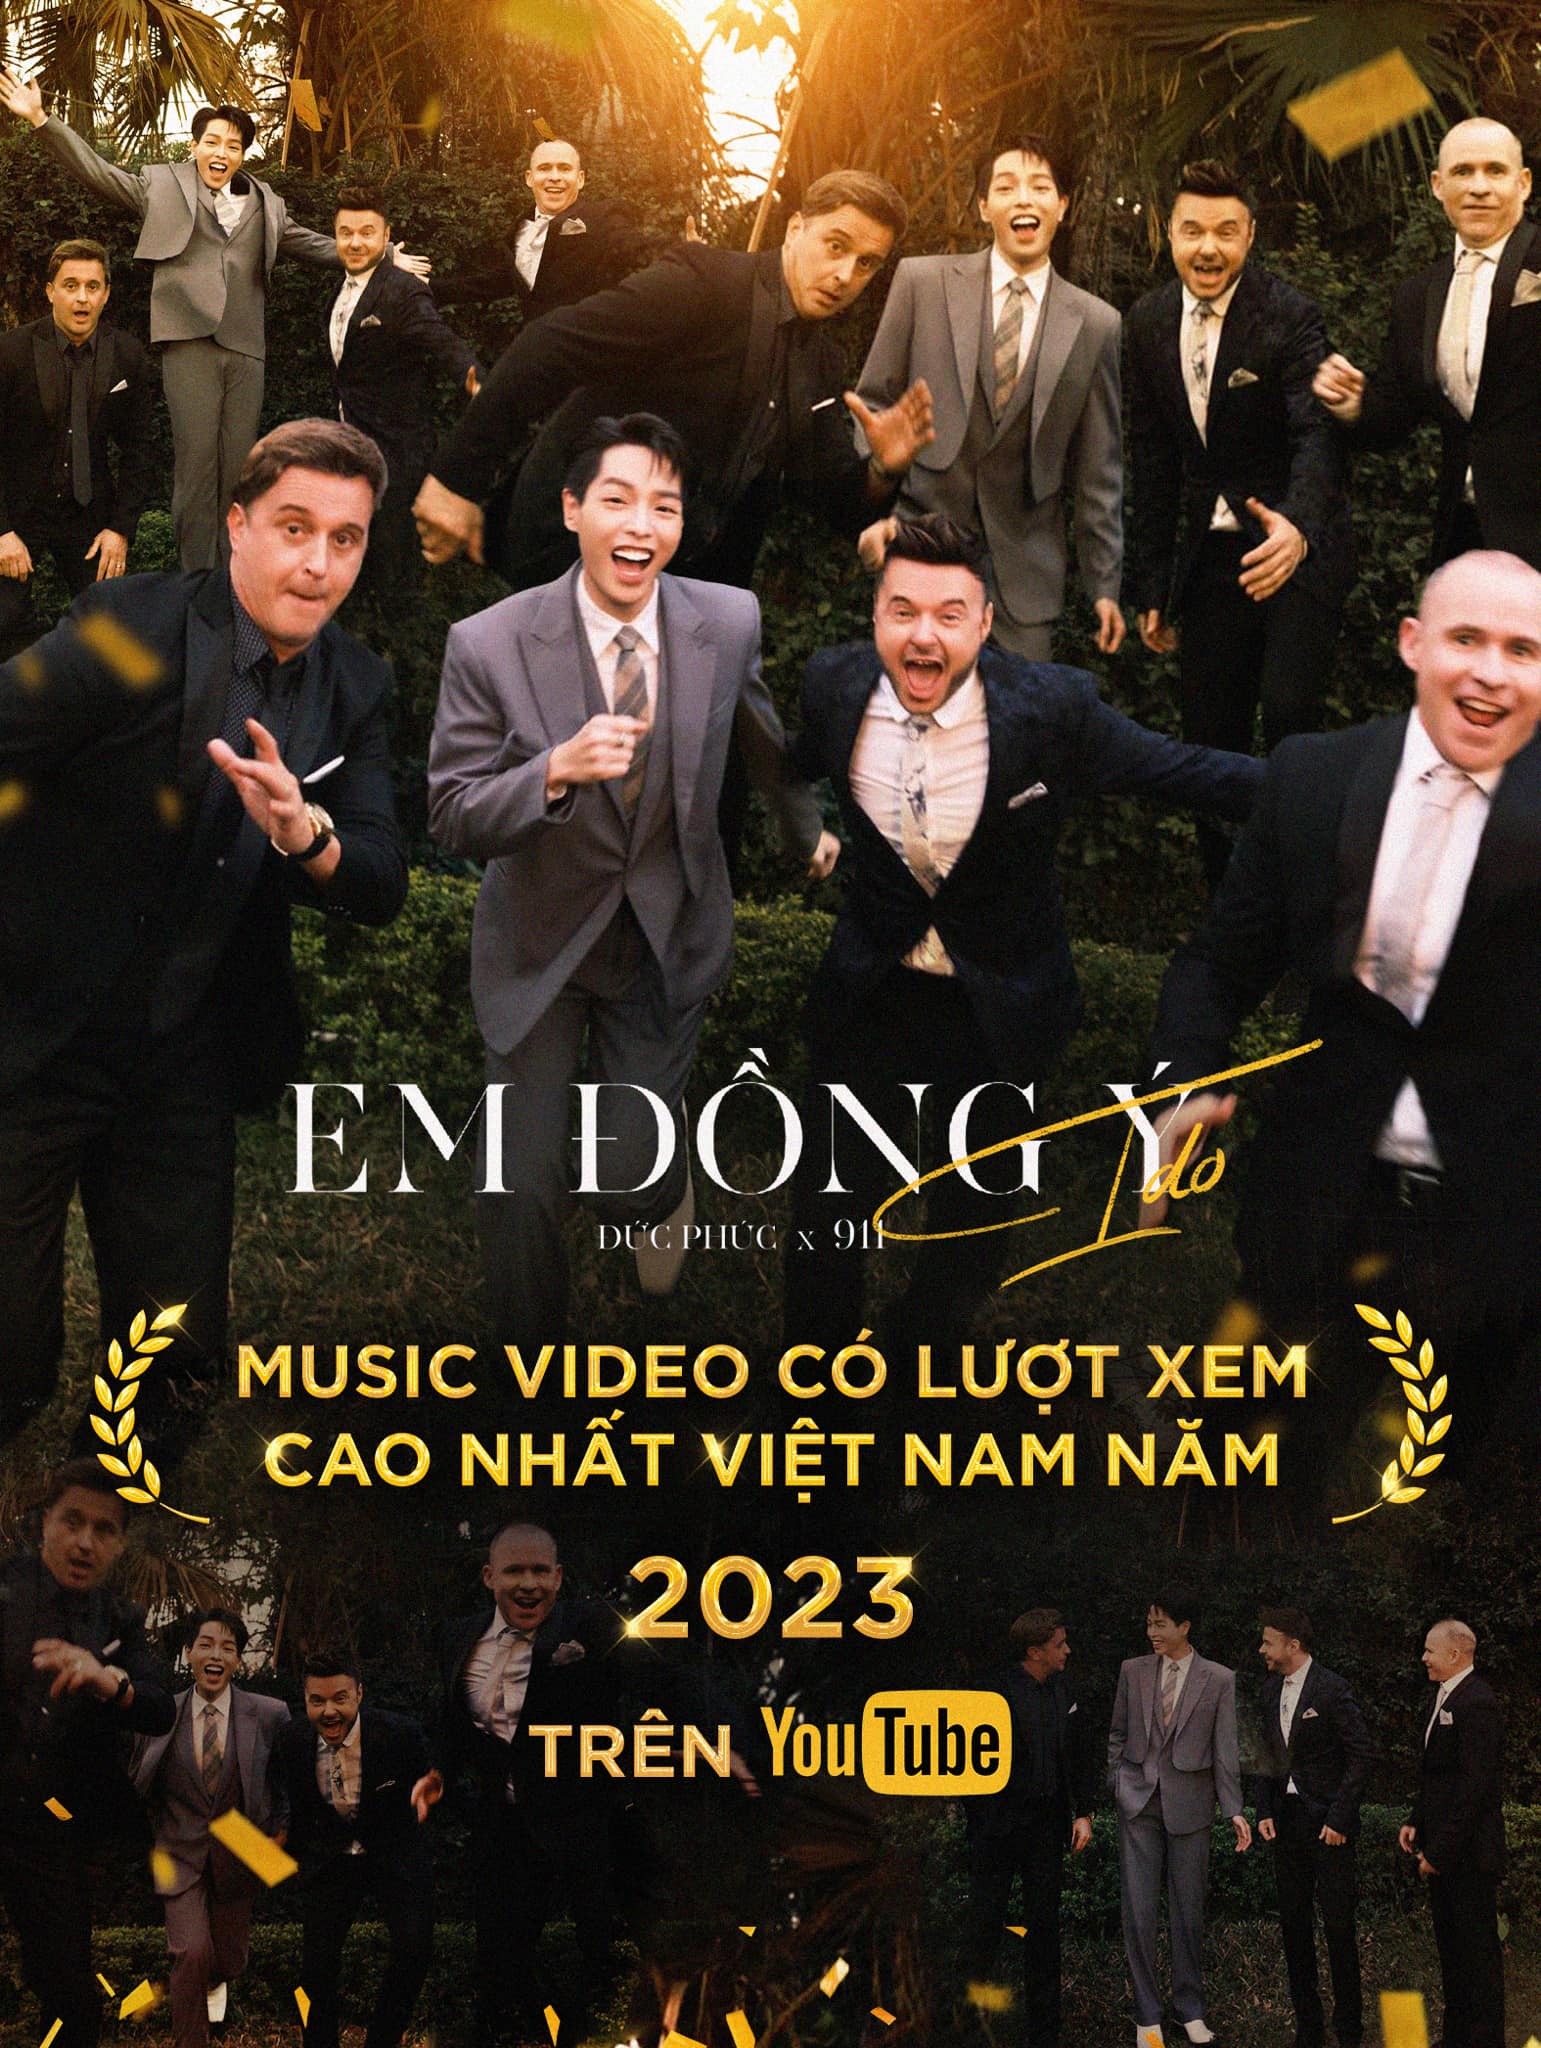 Đức Phúc - Nghệ sĩ sở hữu MV nhiều lượt xem nhất trên YouTube Việt Nam 2023